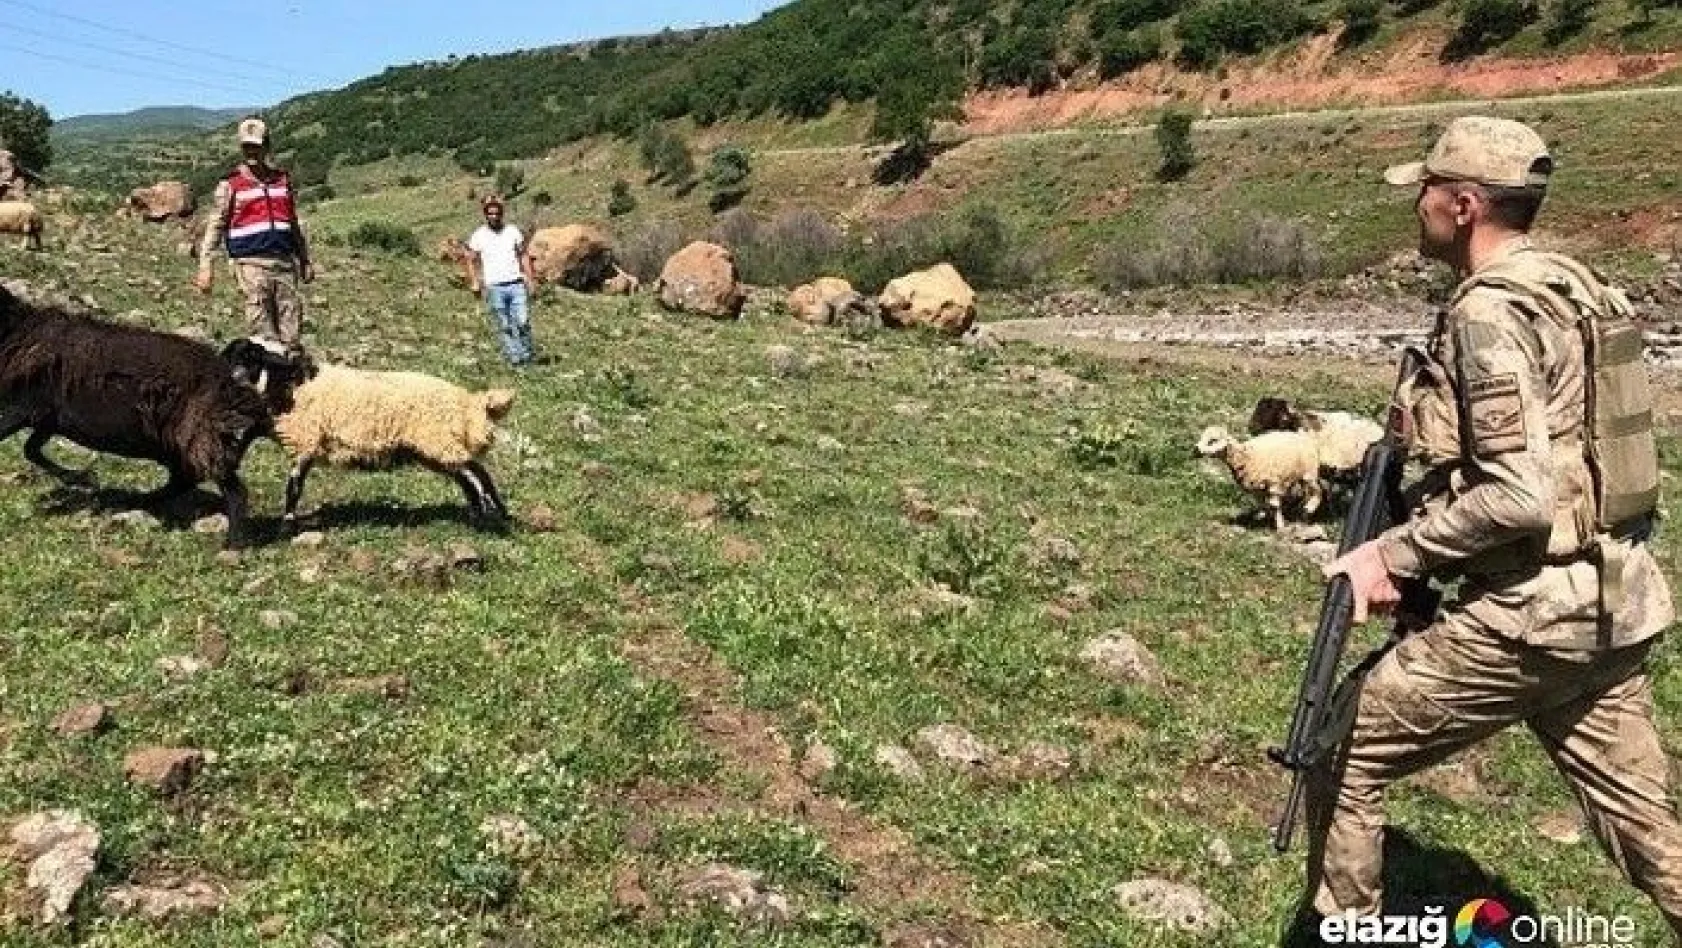 Elazığ'da kayıp koyunlar 9 saat sonra bulundu